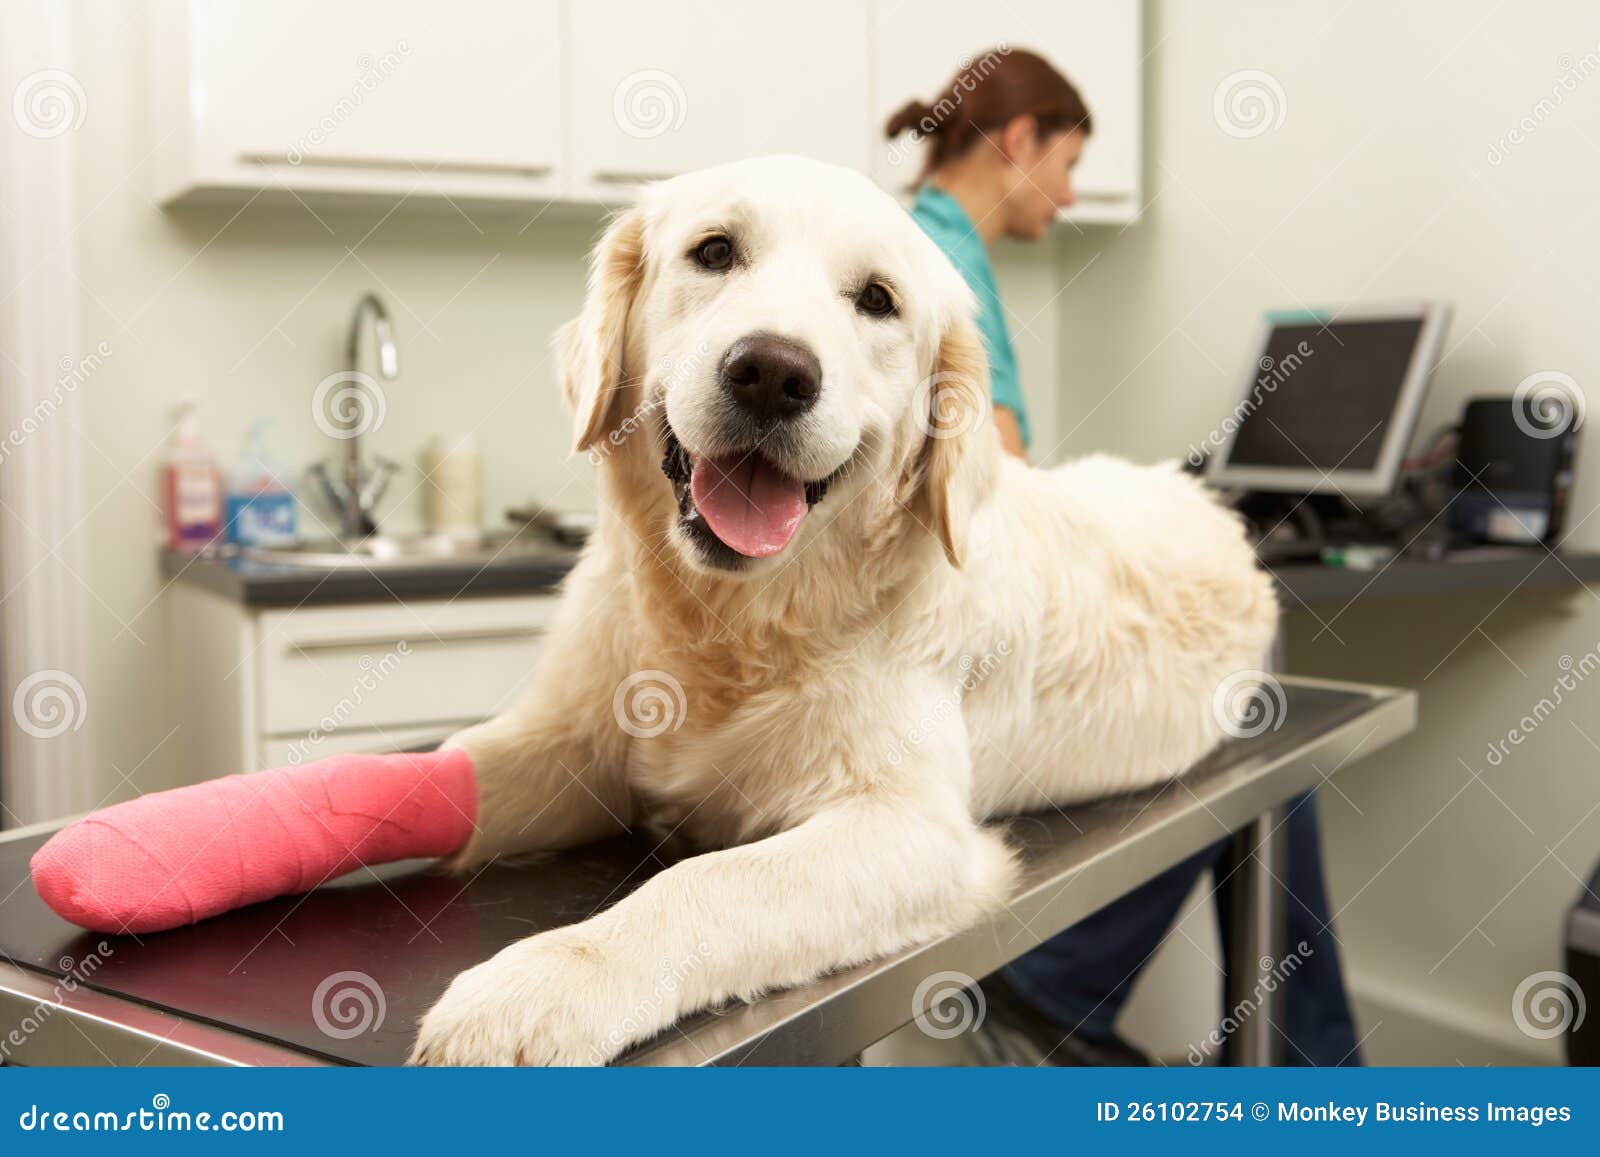 female veterinary surgeon treating dog